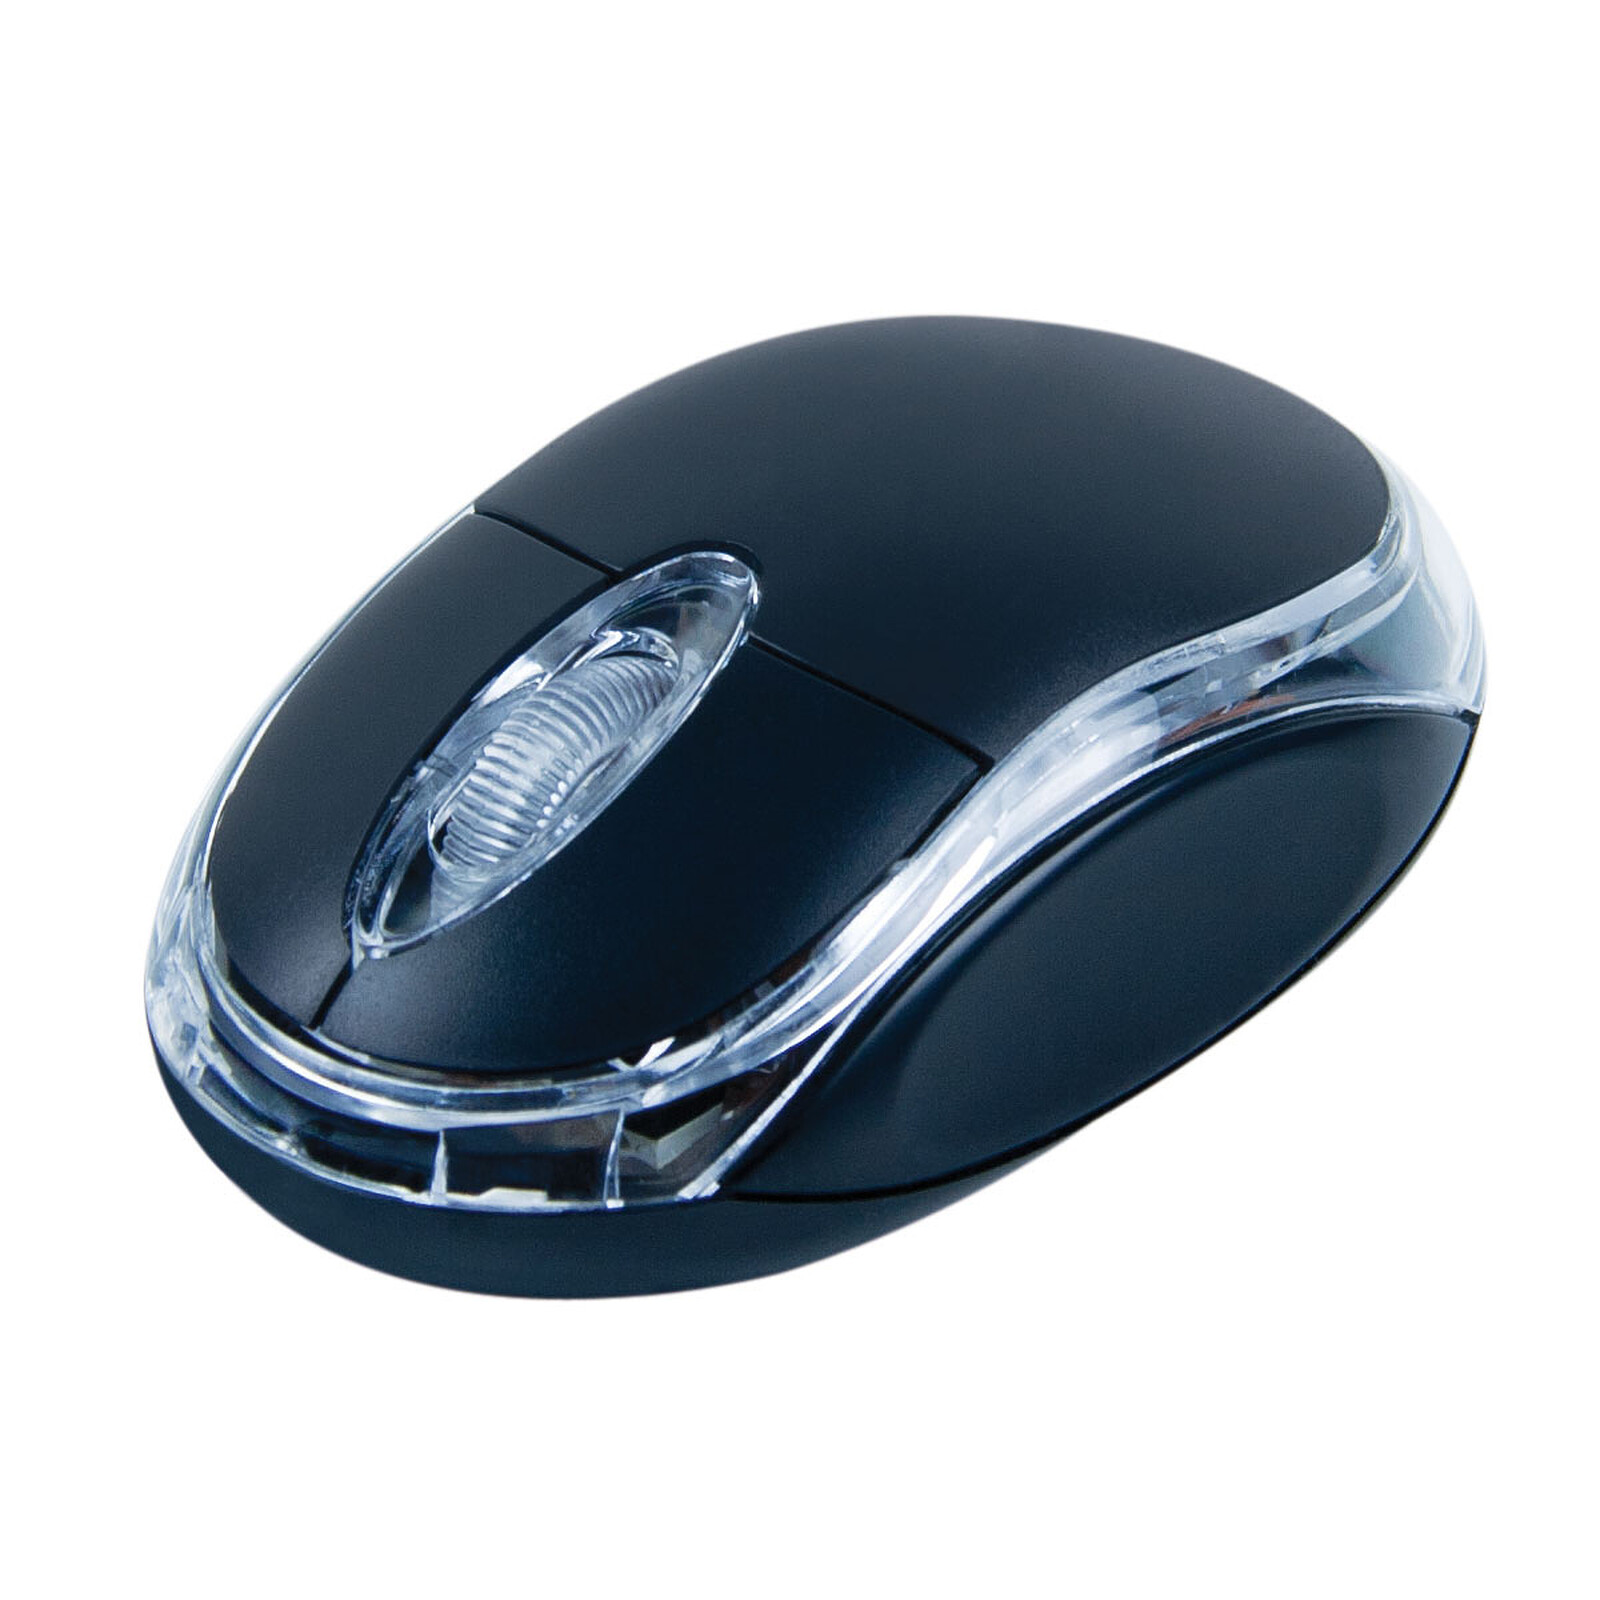 Lenovo Essential Mouse Noir - Souris PC - Garantie 3 ans LDLC